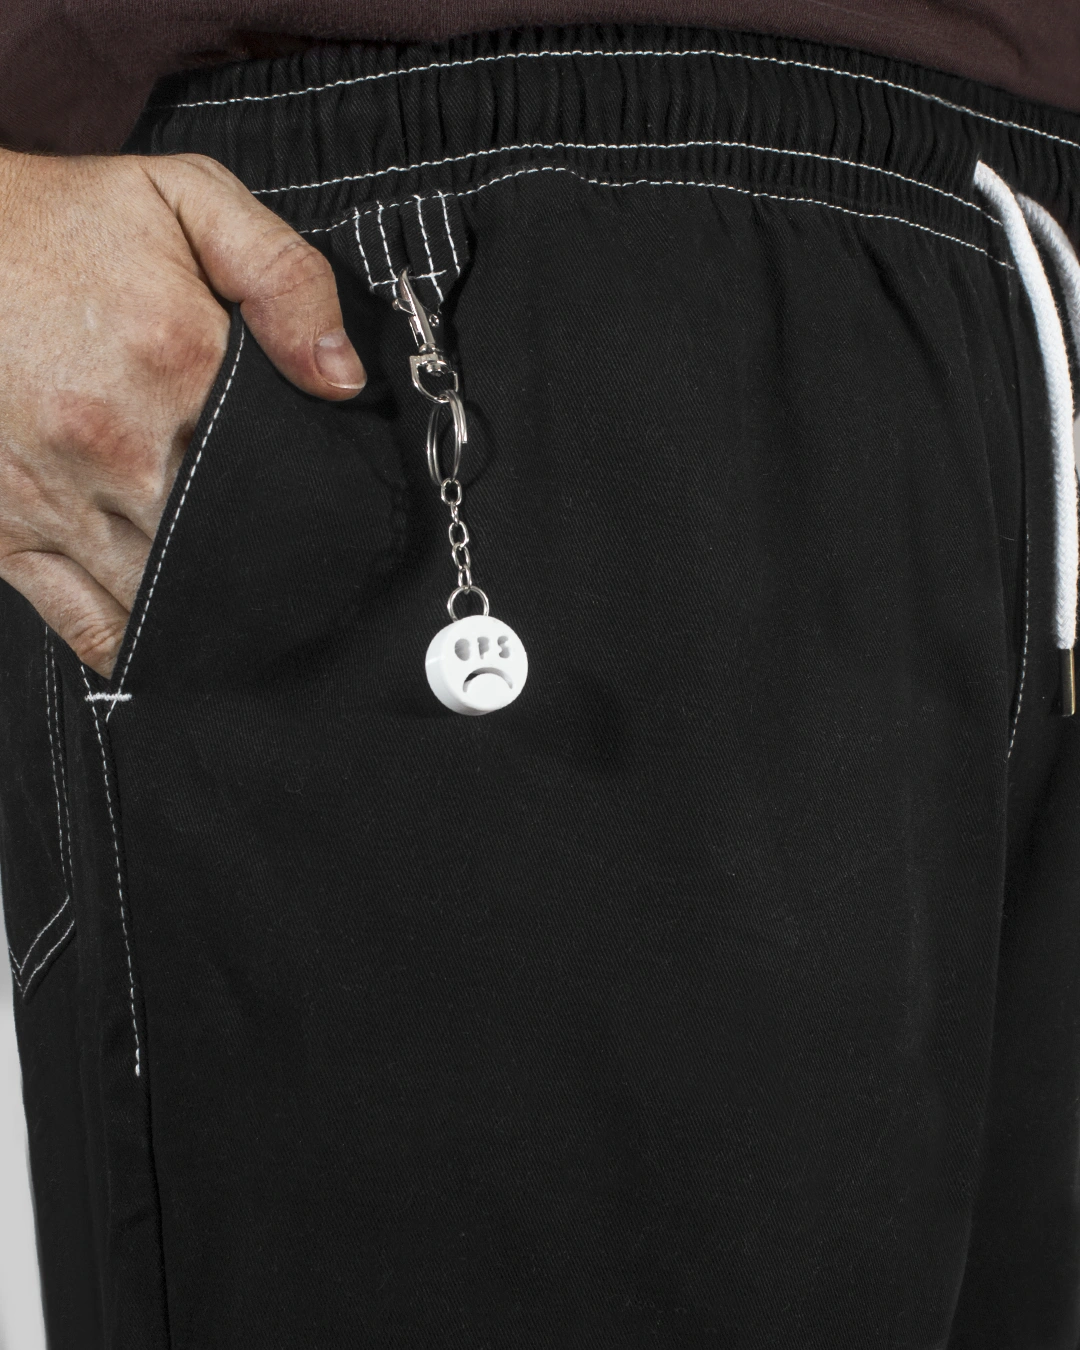 pantalón negro detalle porta llave cintura elastica cordon costuras expuestas invertidas